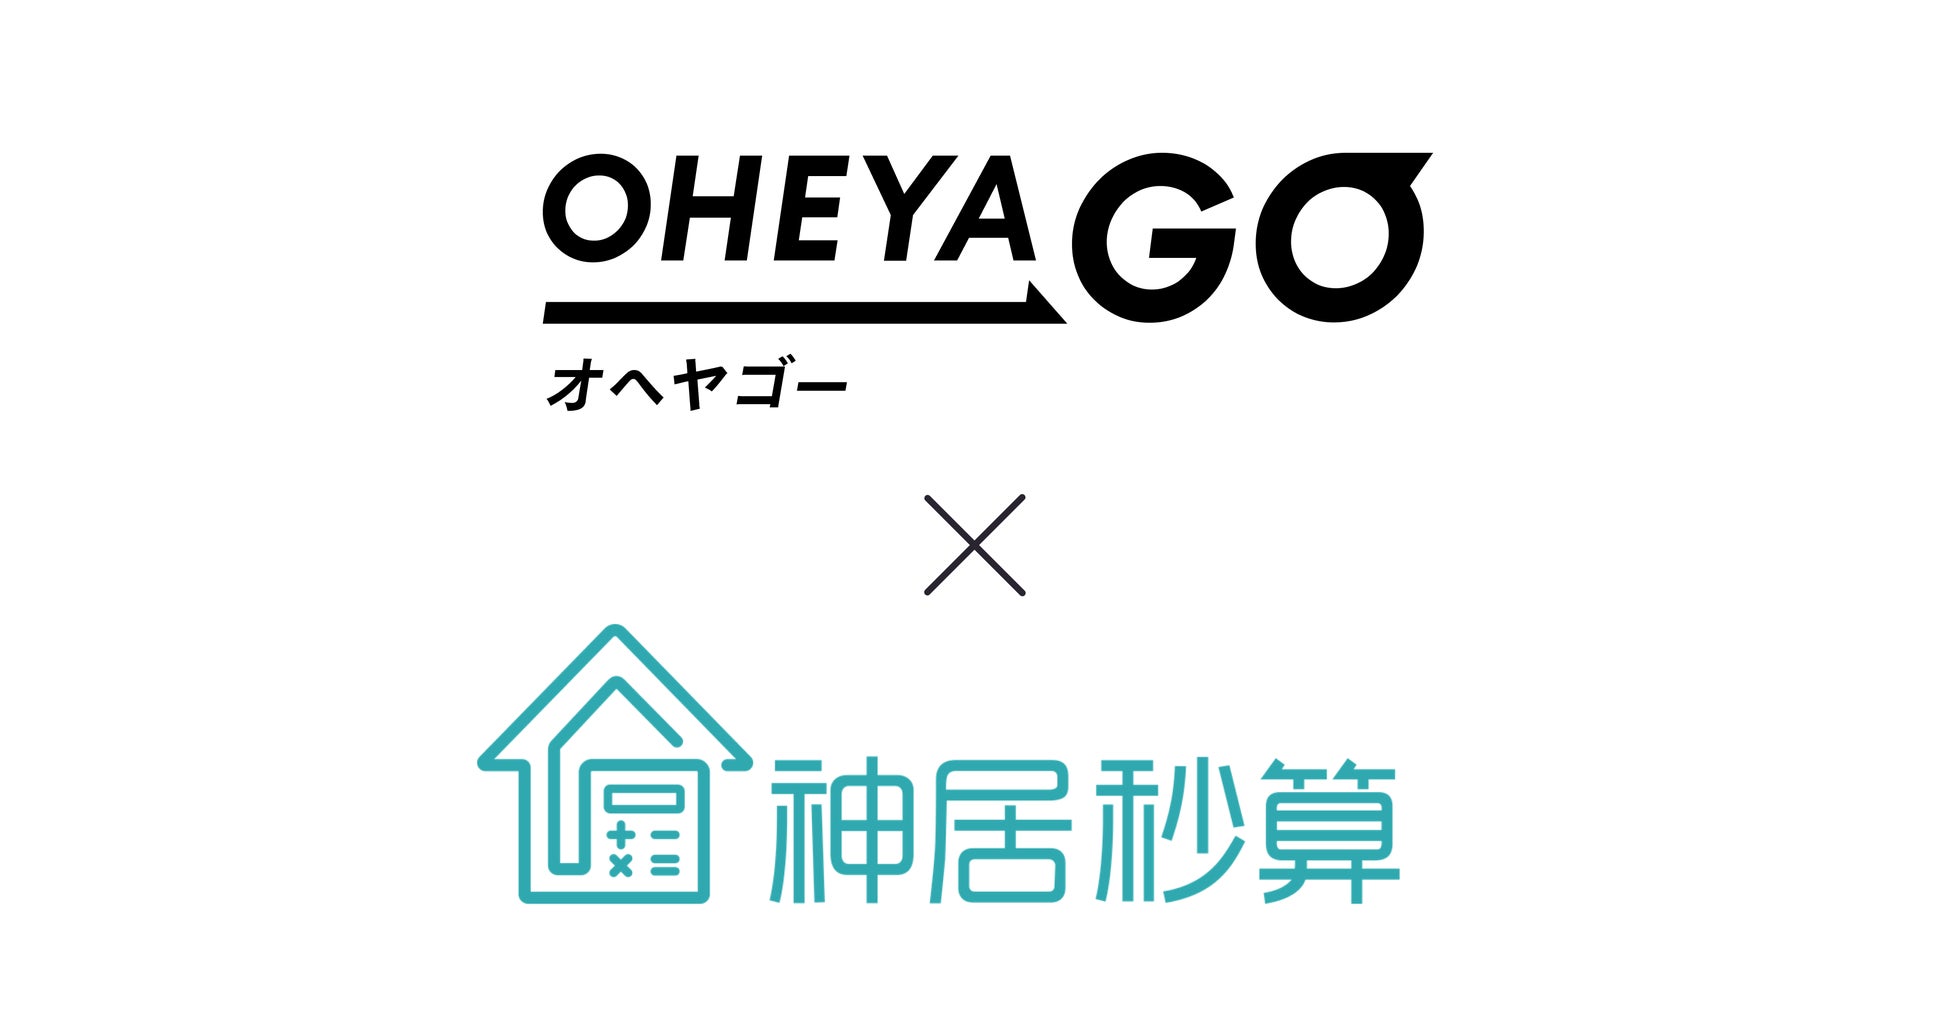 ネット不動産賃貸サービス「OHEYAGO」が「神居秒算」と提携のサブ画像1